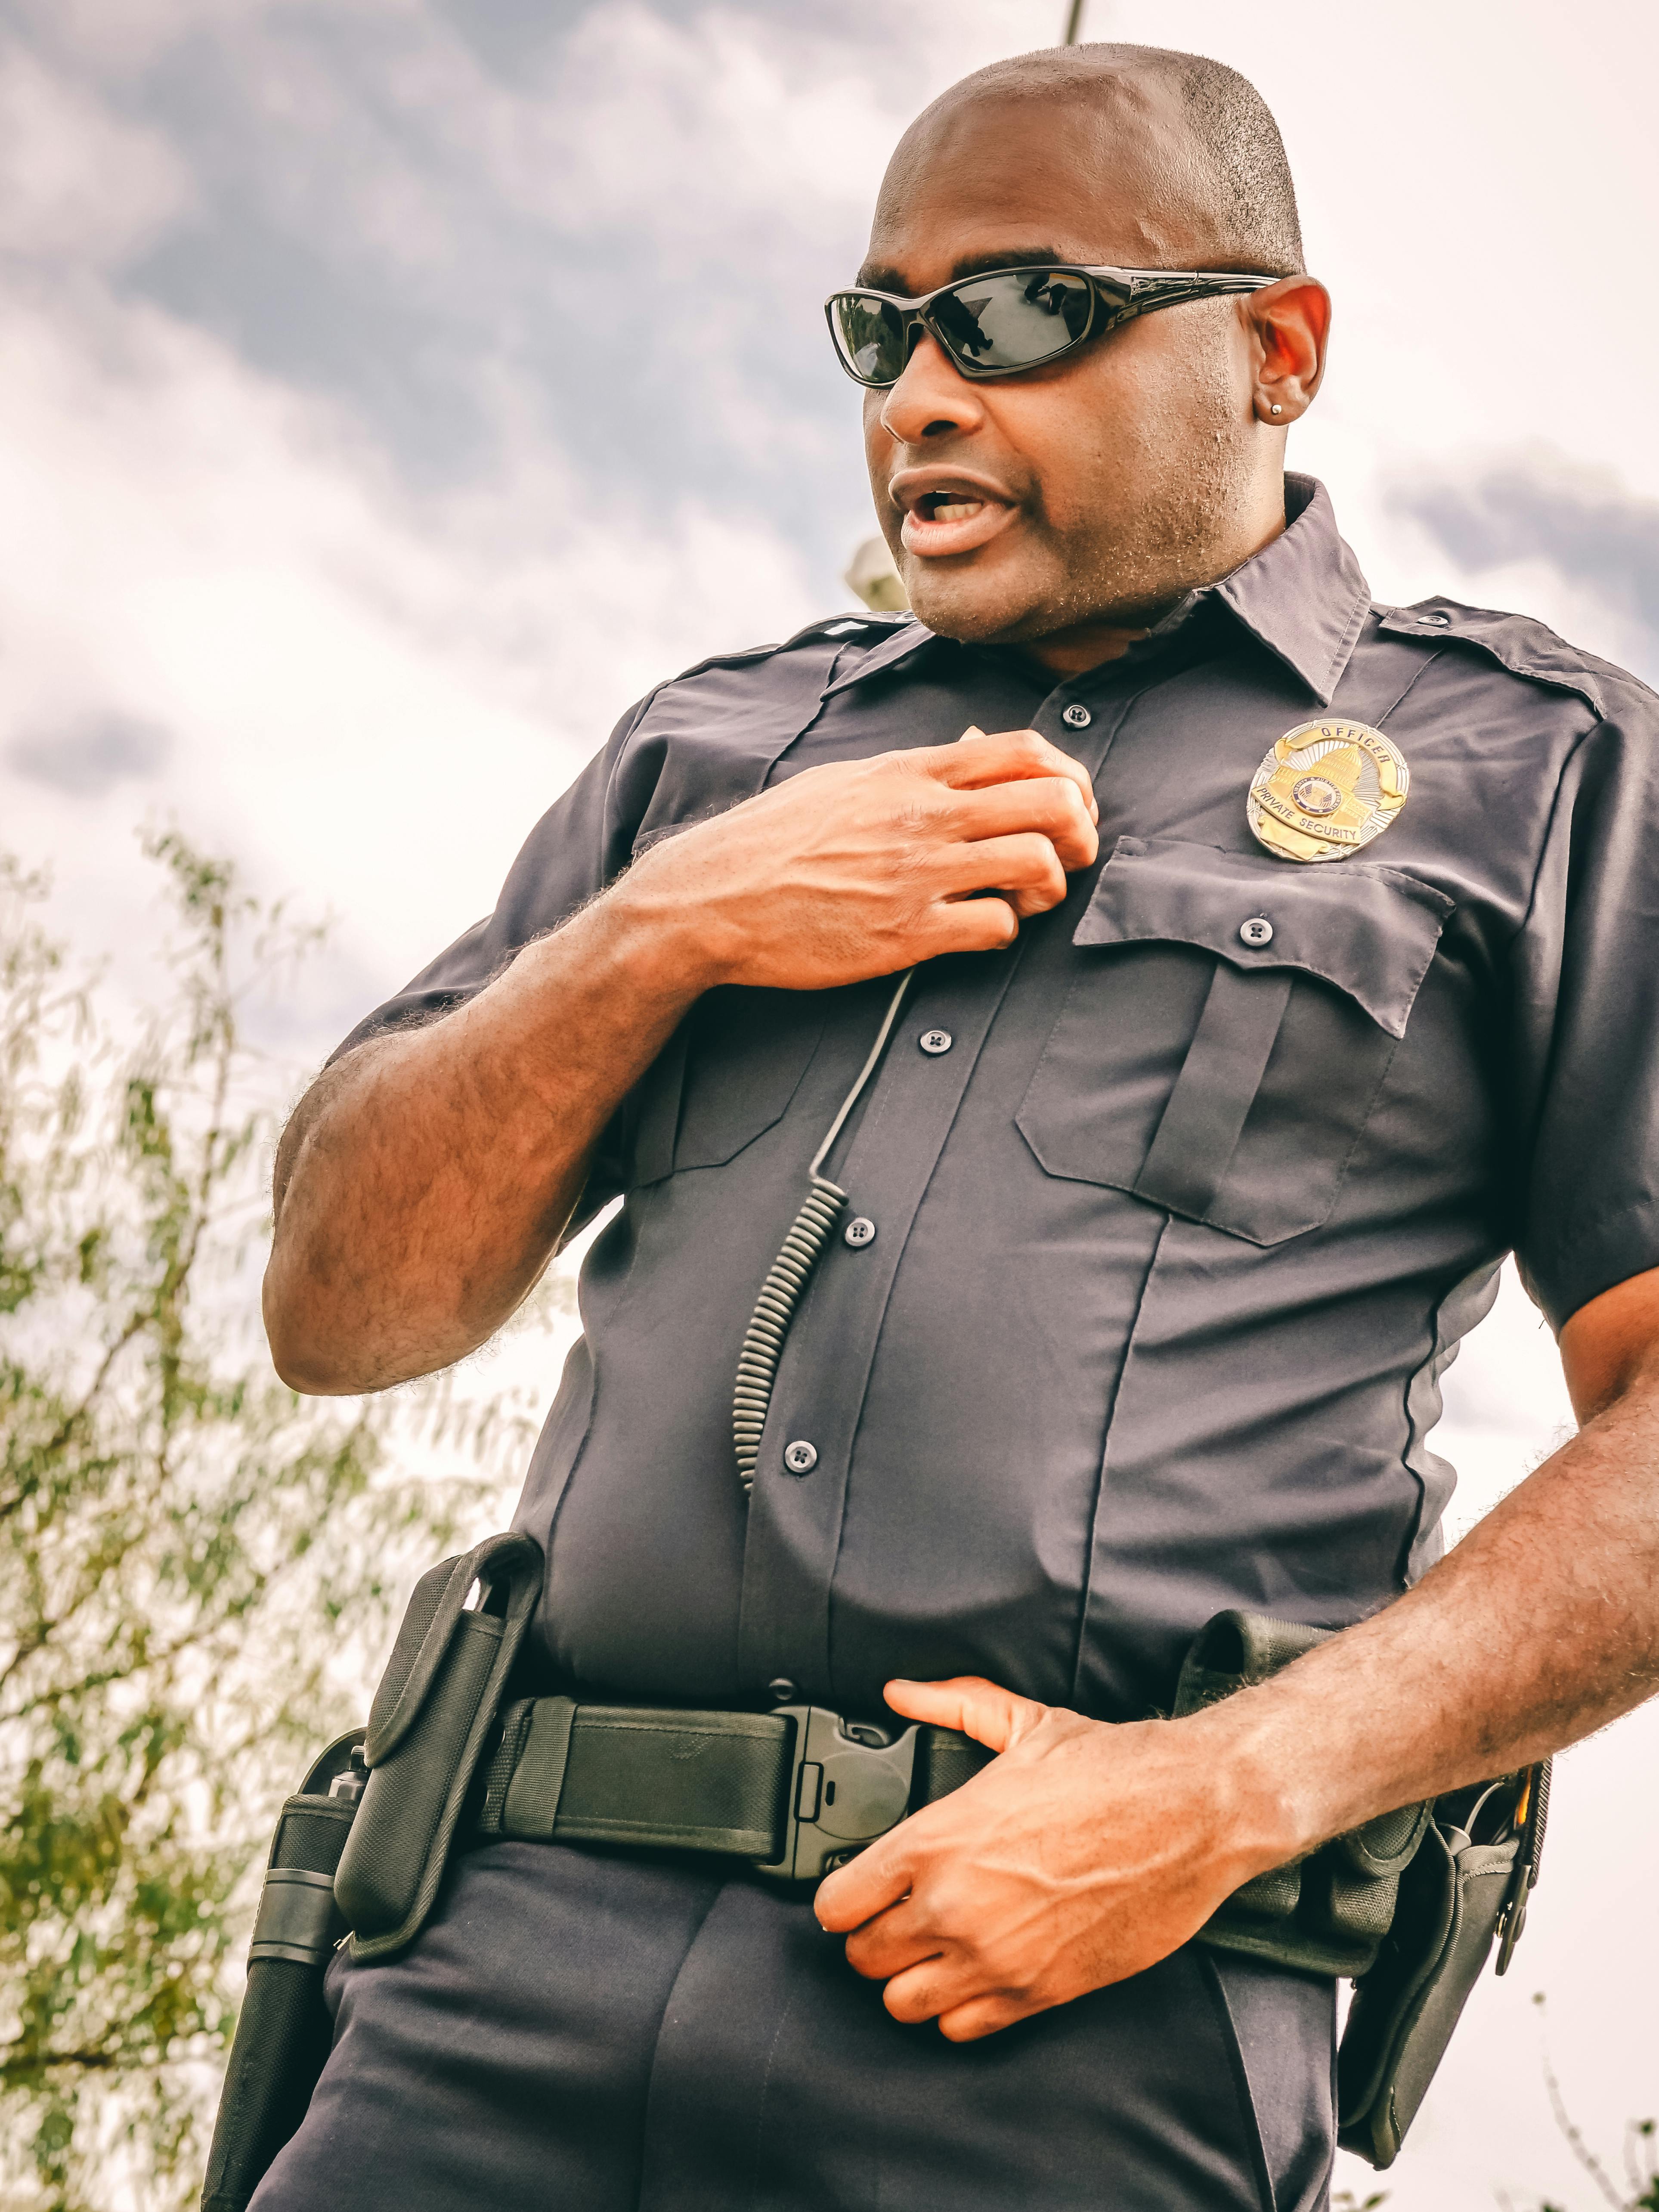 Un policier parle dans son talkie-walkie | Source : Pexels